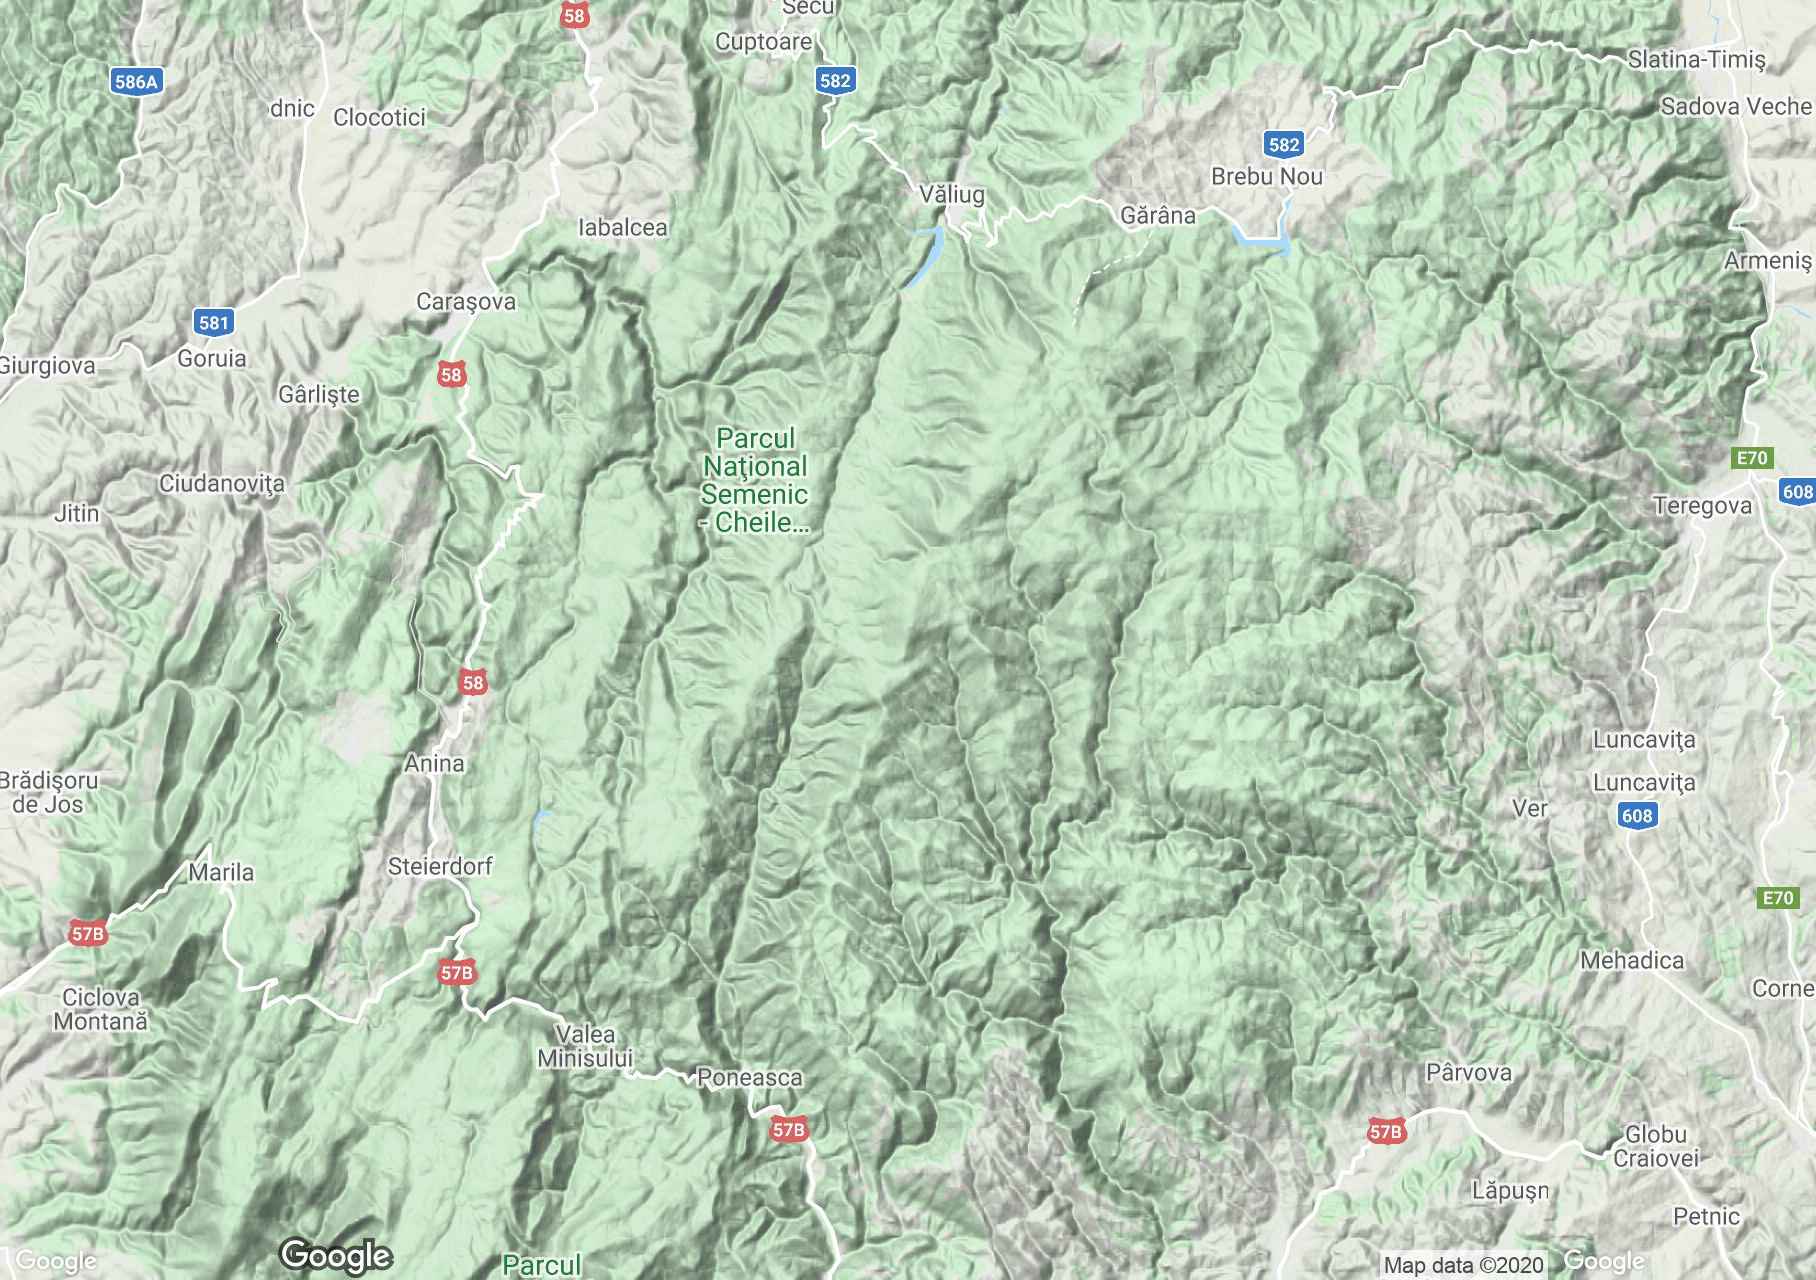 Banati hegység: Szemenik interaktív turista térképe.